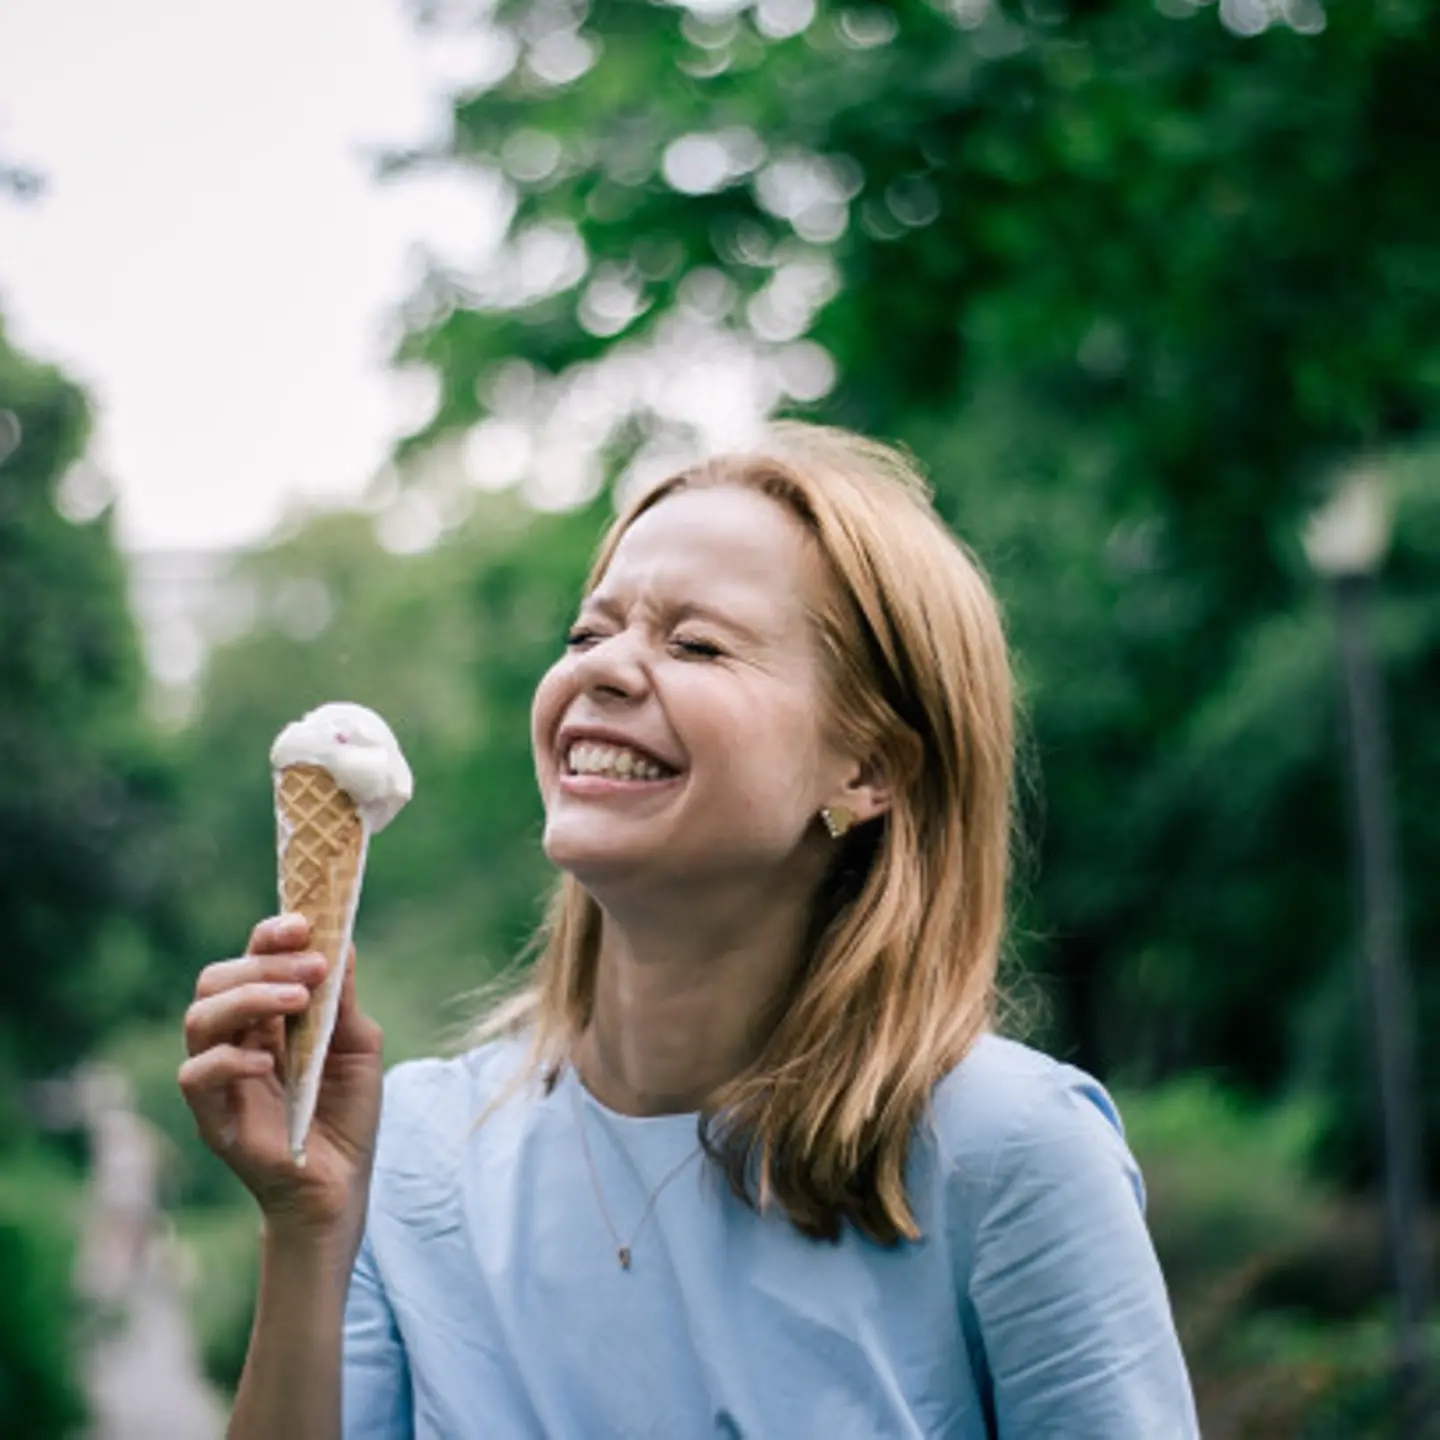 Foodbloggerin Rebecca Hoffmann hält eine tropfende Eistüte in der Hand und lacht.